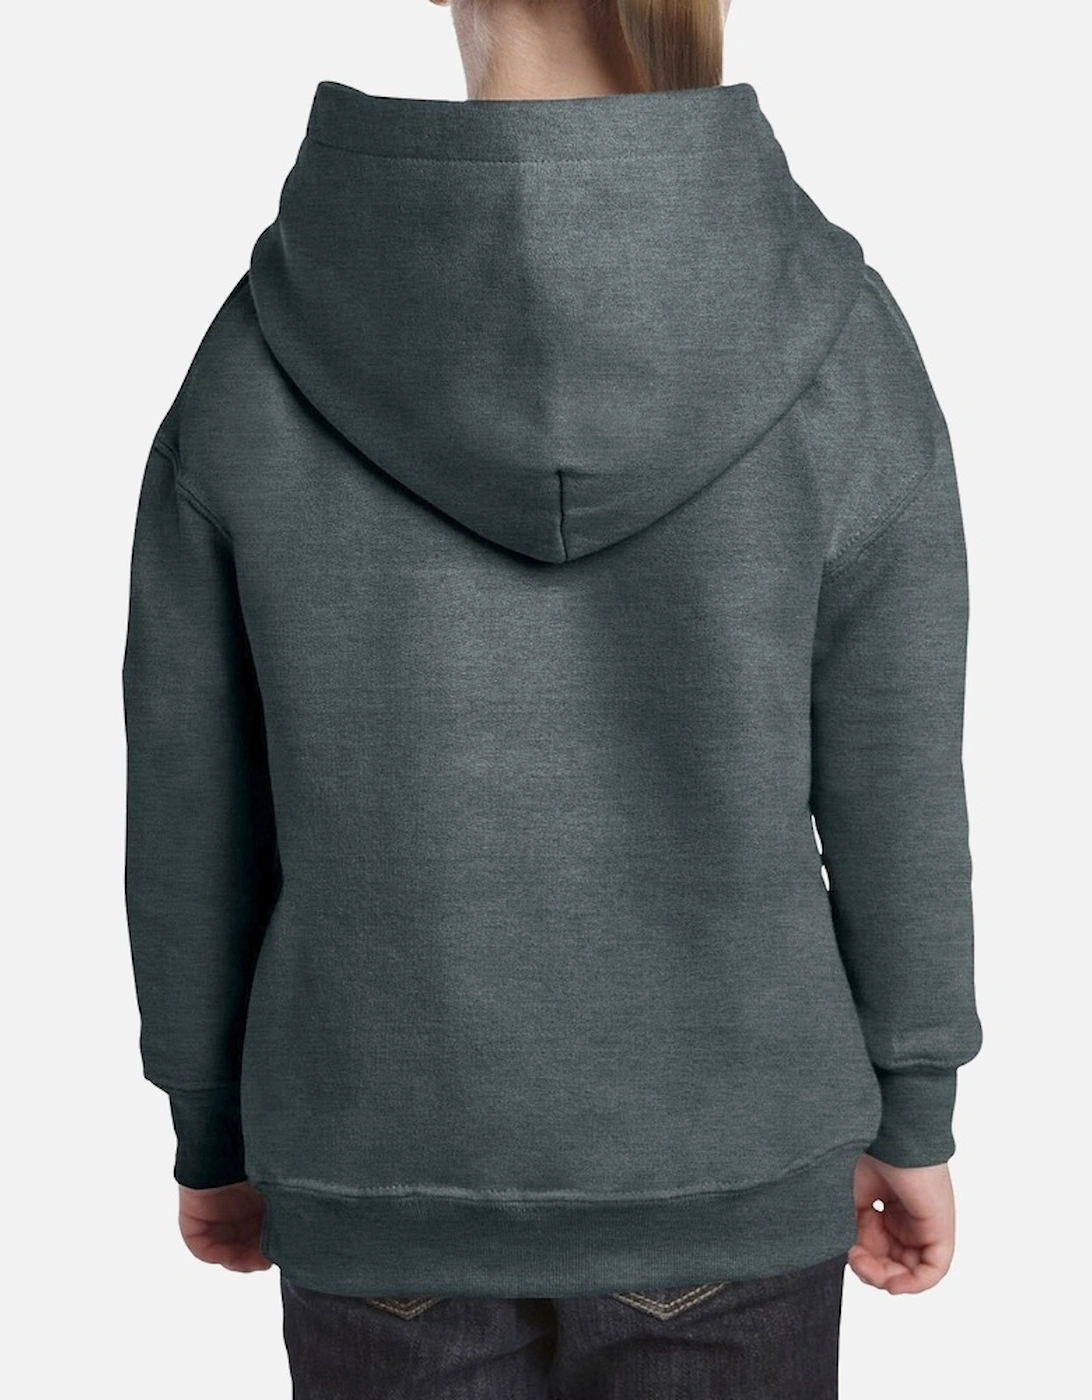 Heavy Blend Childrens Unisex Hooded Sweatshirt Top / Hoodie